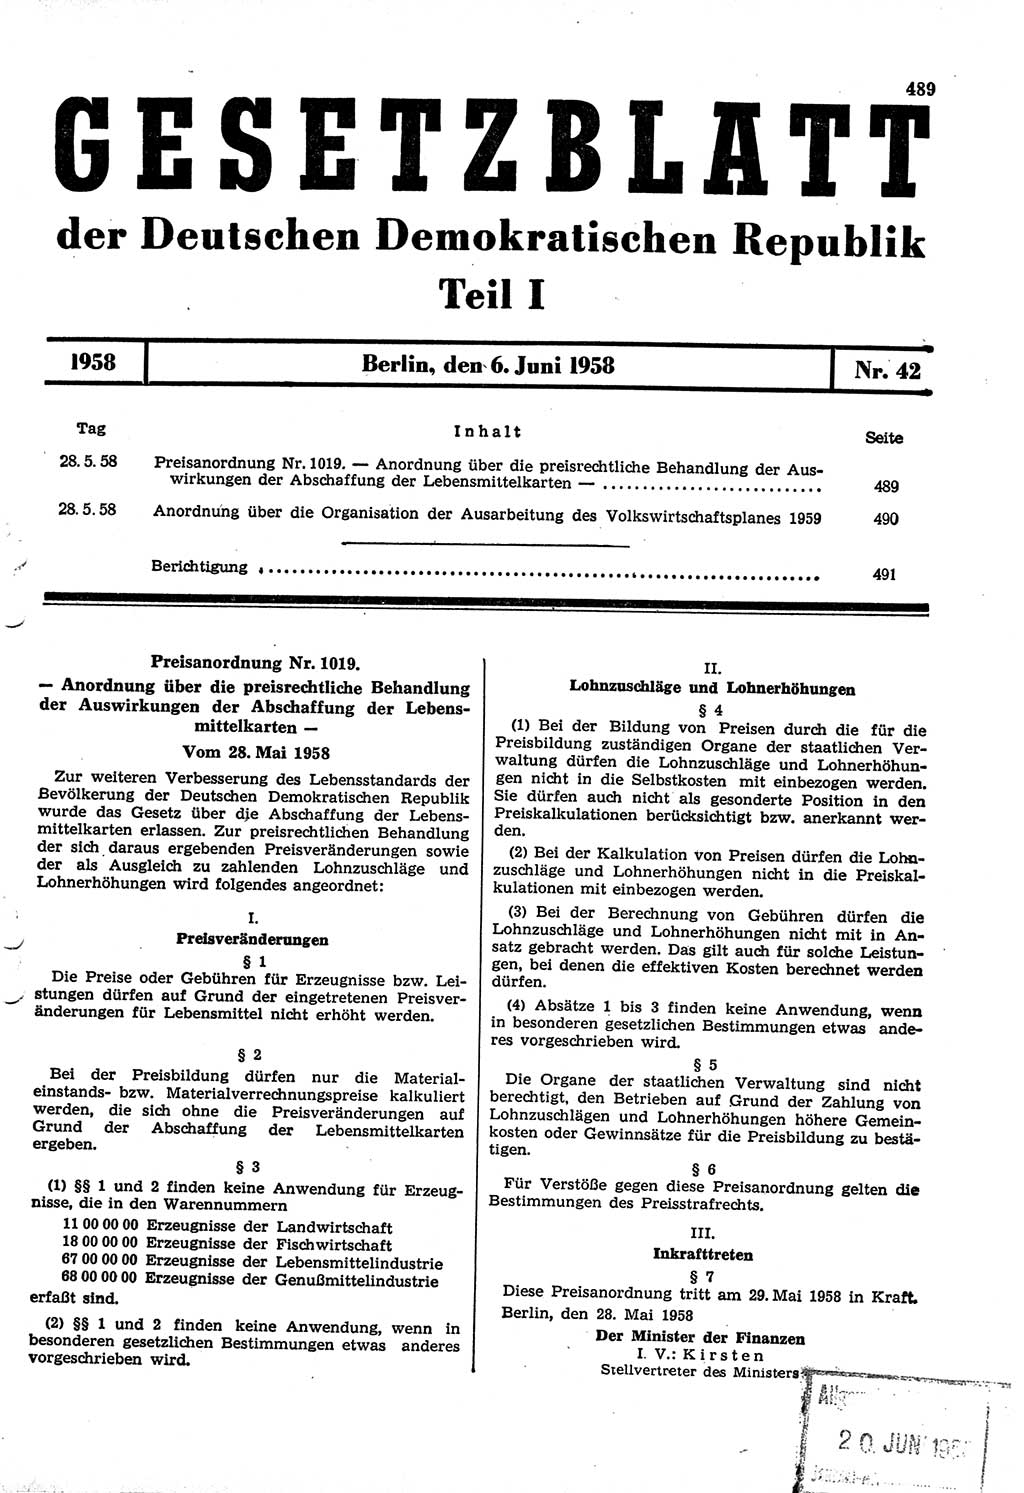 Gesetzblatt (GBl.) der Deutschen Demokratischen Republik (DDR) Teil Ⅰ 1958, Seite 489 (GBl. DDR Ⅰ 1958, S. 489)